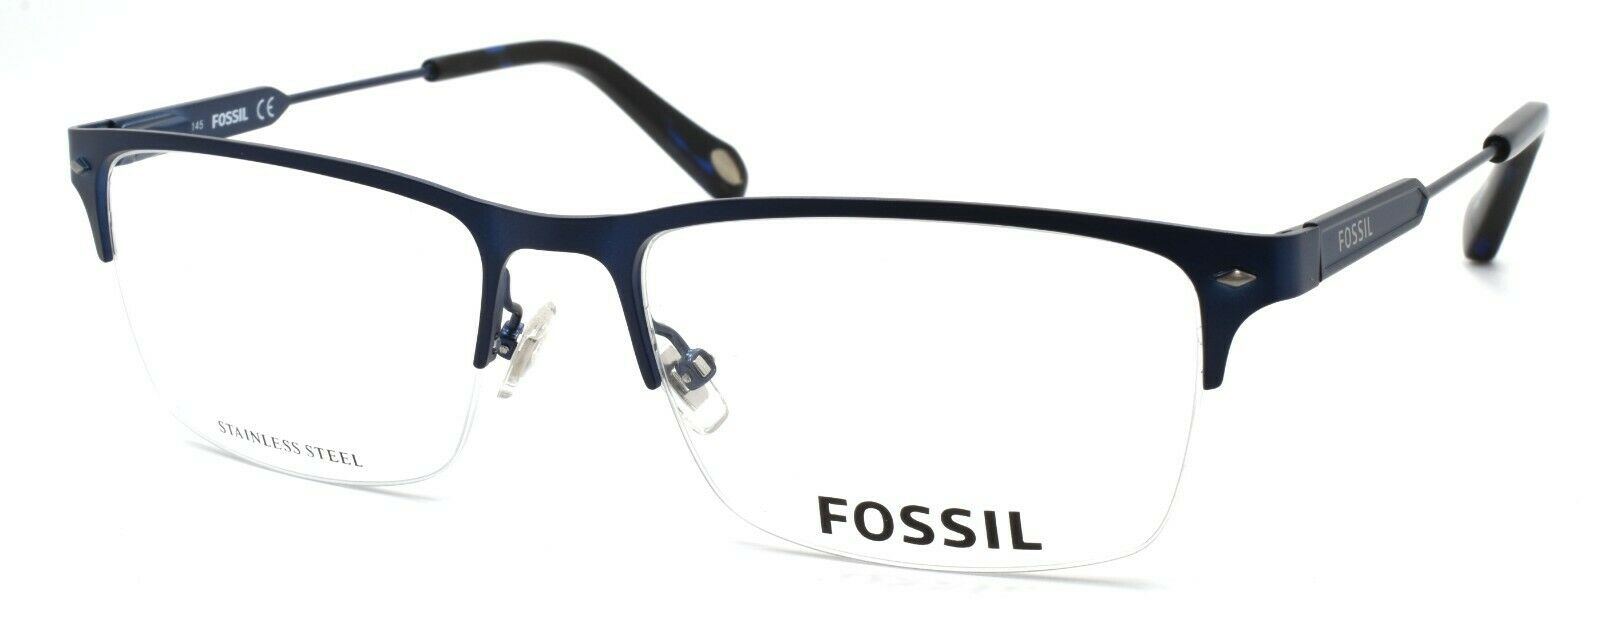 1-Fossil FOS 6080 0DA4 Men's Eyeglasses Frames Half-rim 54-17-145 Navy Blue-827886073801-IKSpecs